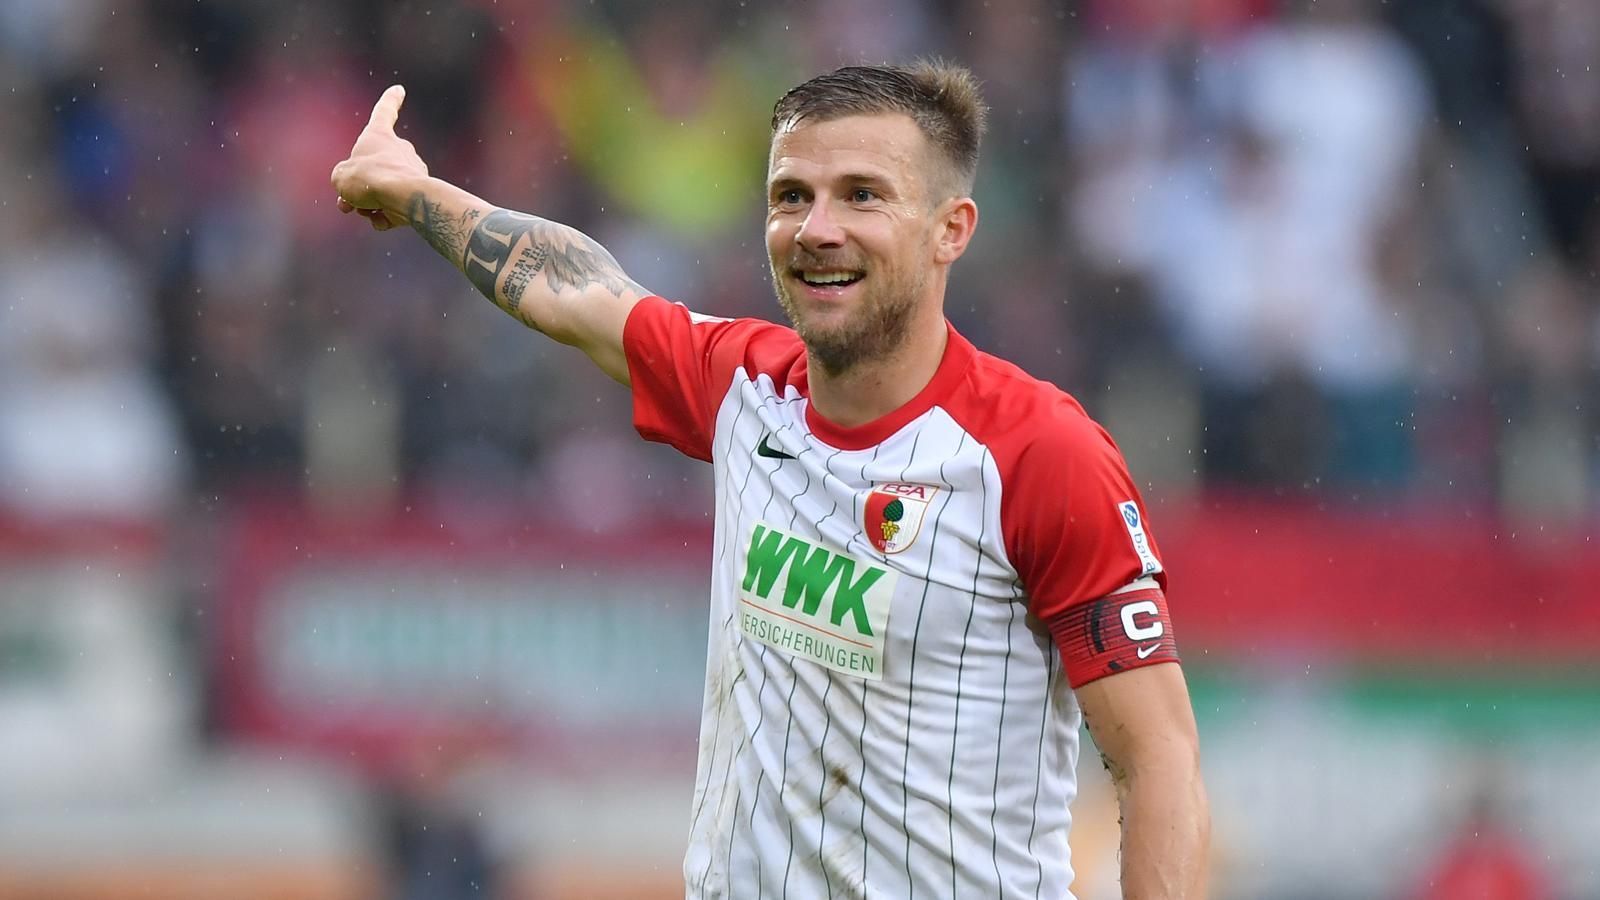 
                <strong>FC Augsburg: Daniel Baier</strong><br>
                Im Team seit: Januar 2010Kapitän seit: 2017
              